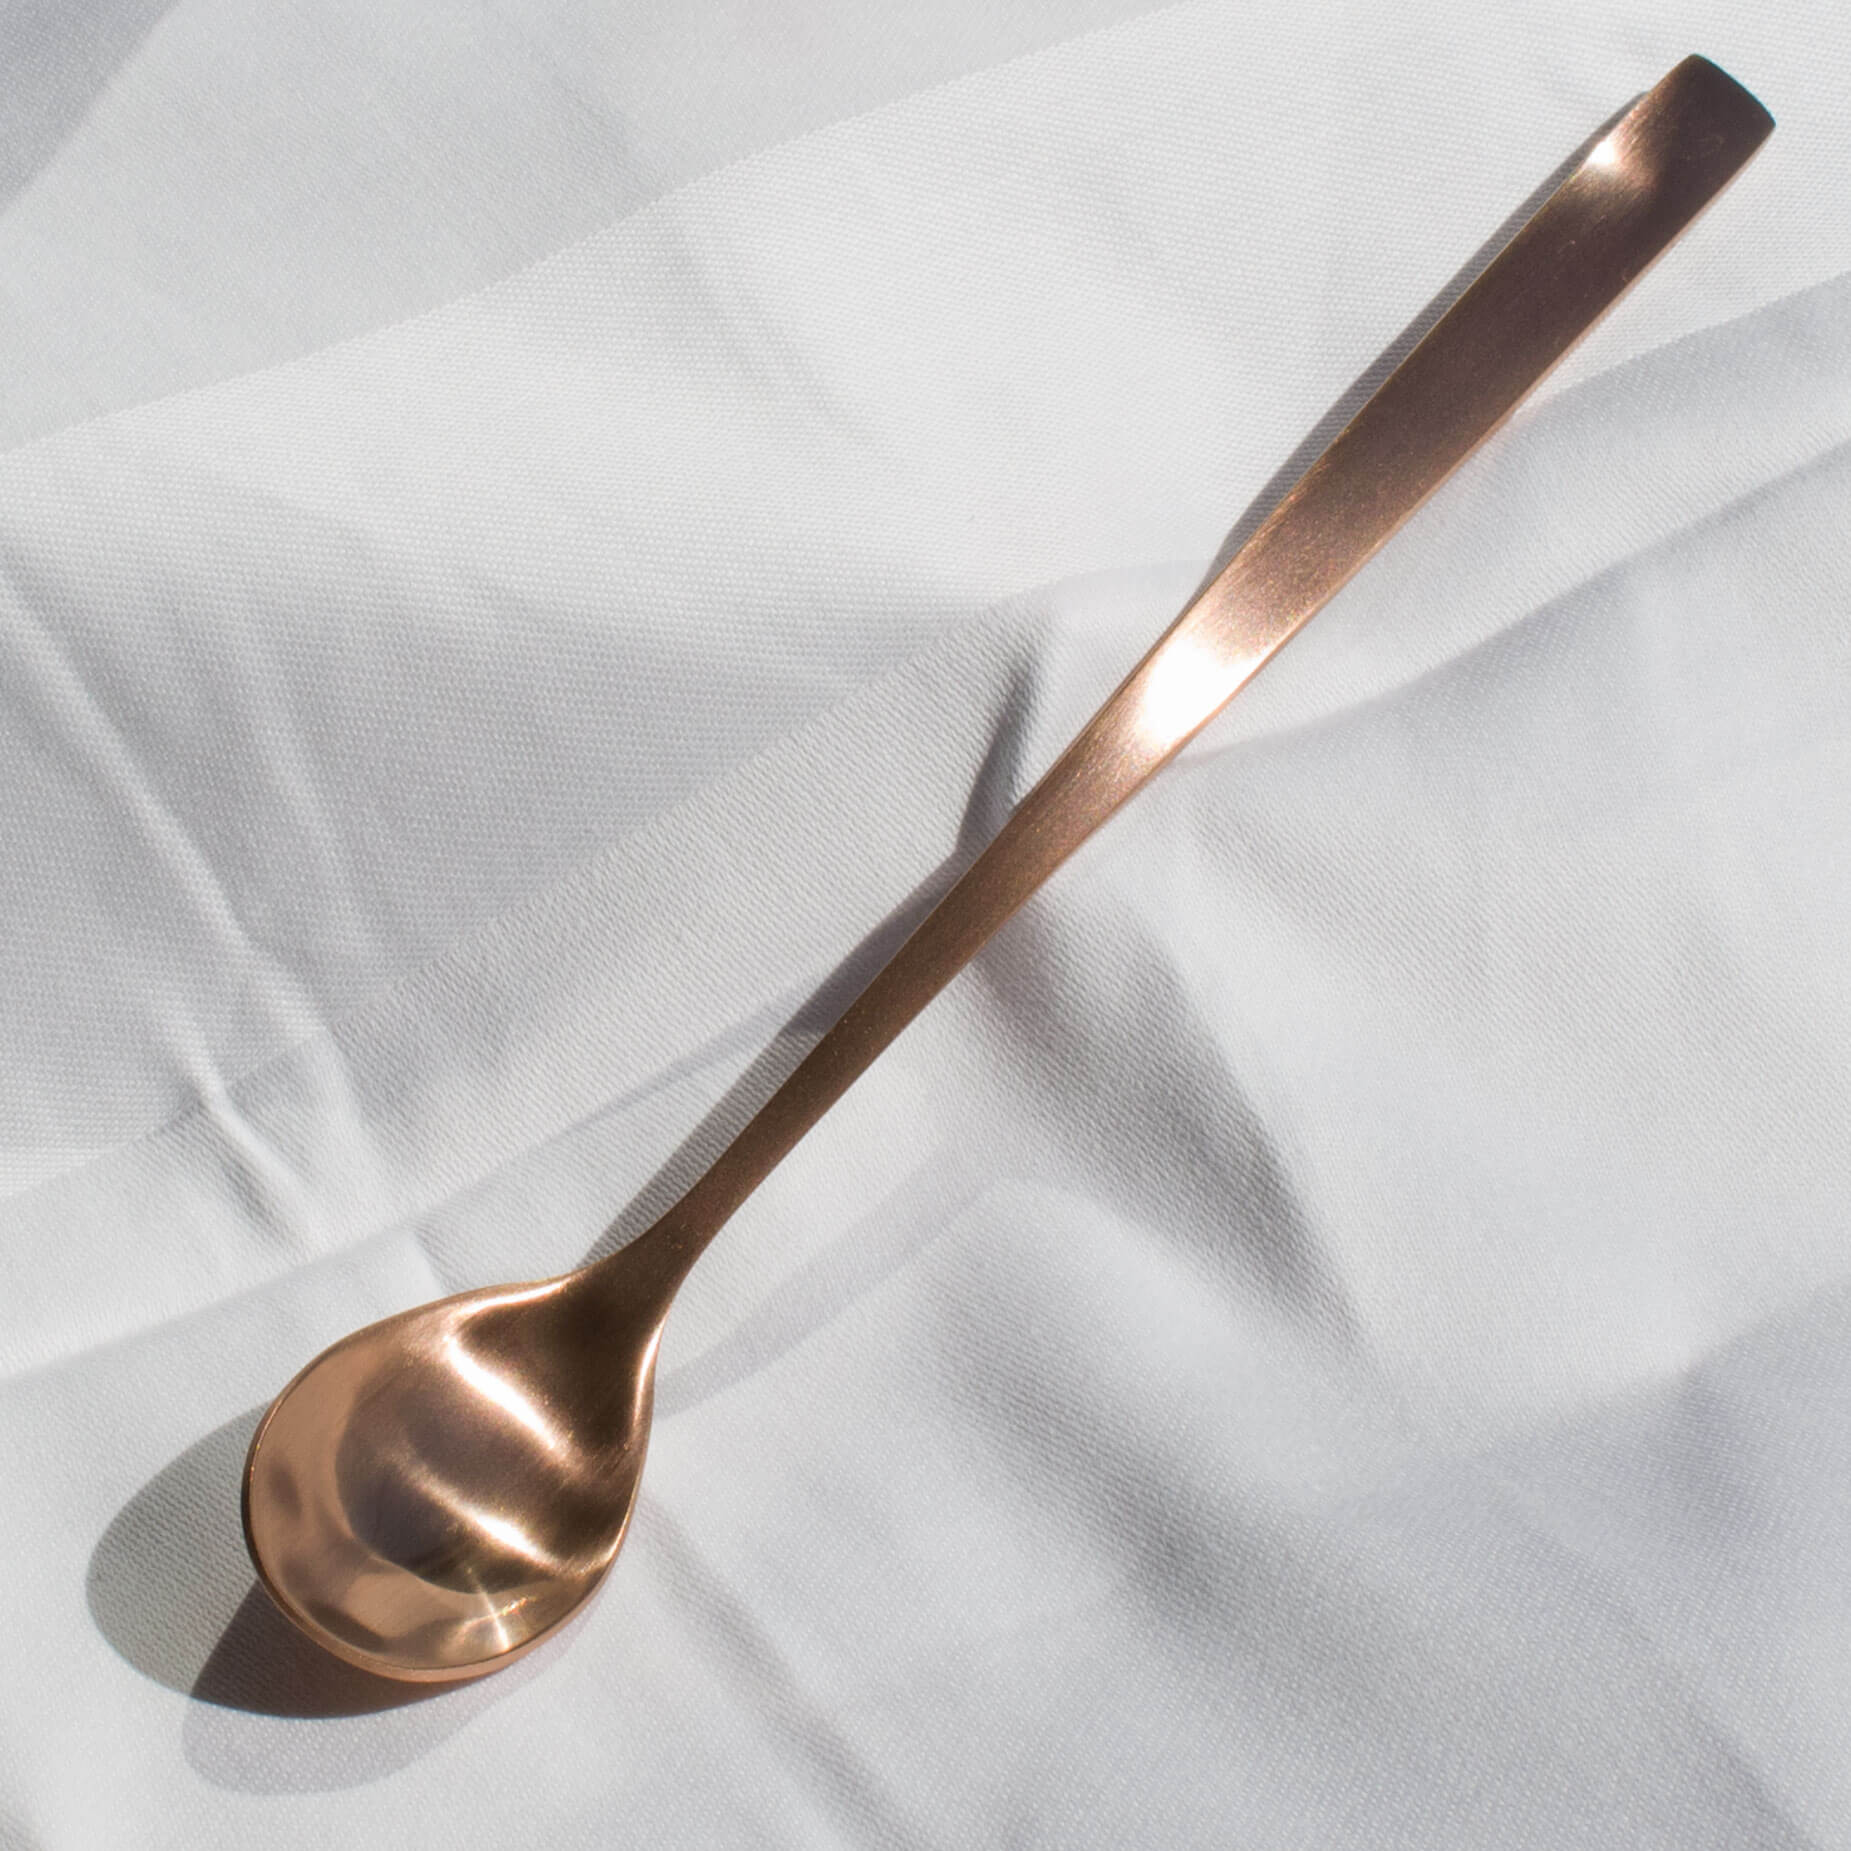 Soda spoons Comas BCN - copper-colored (12 pcs.)